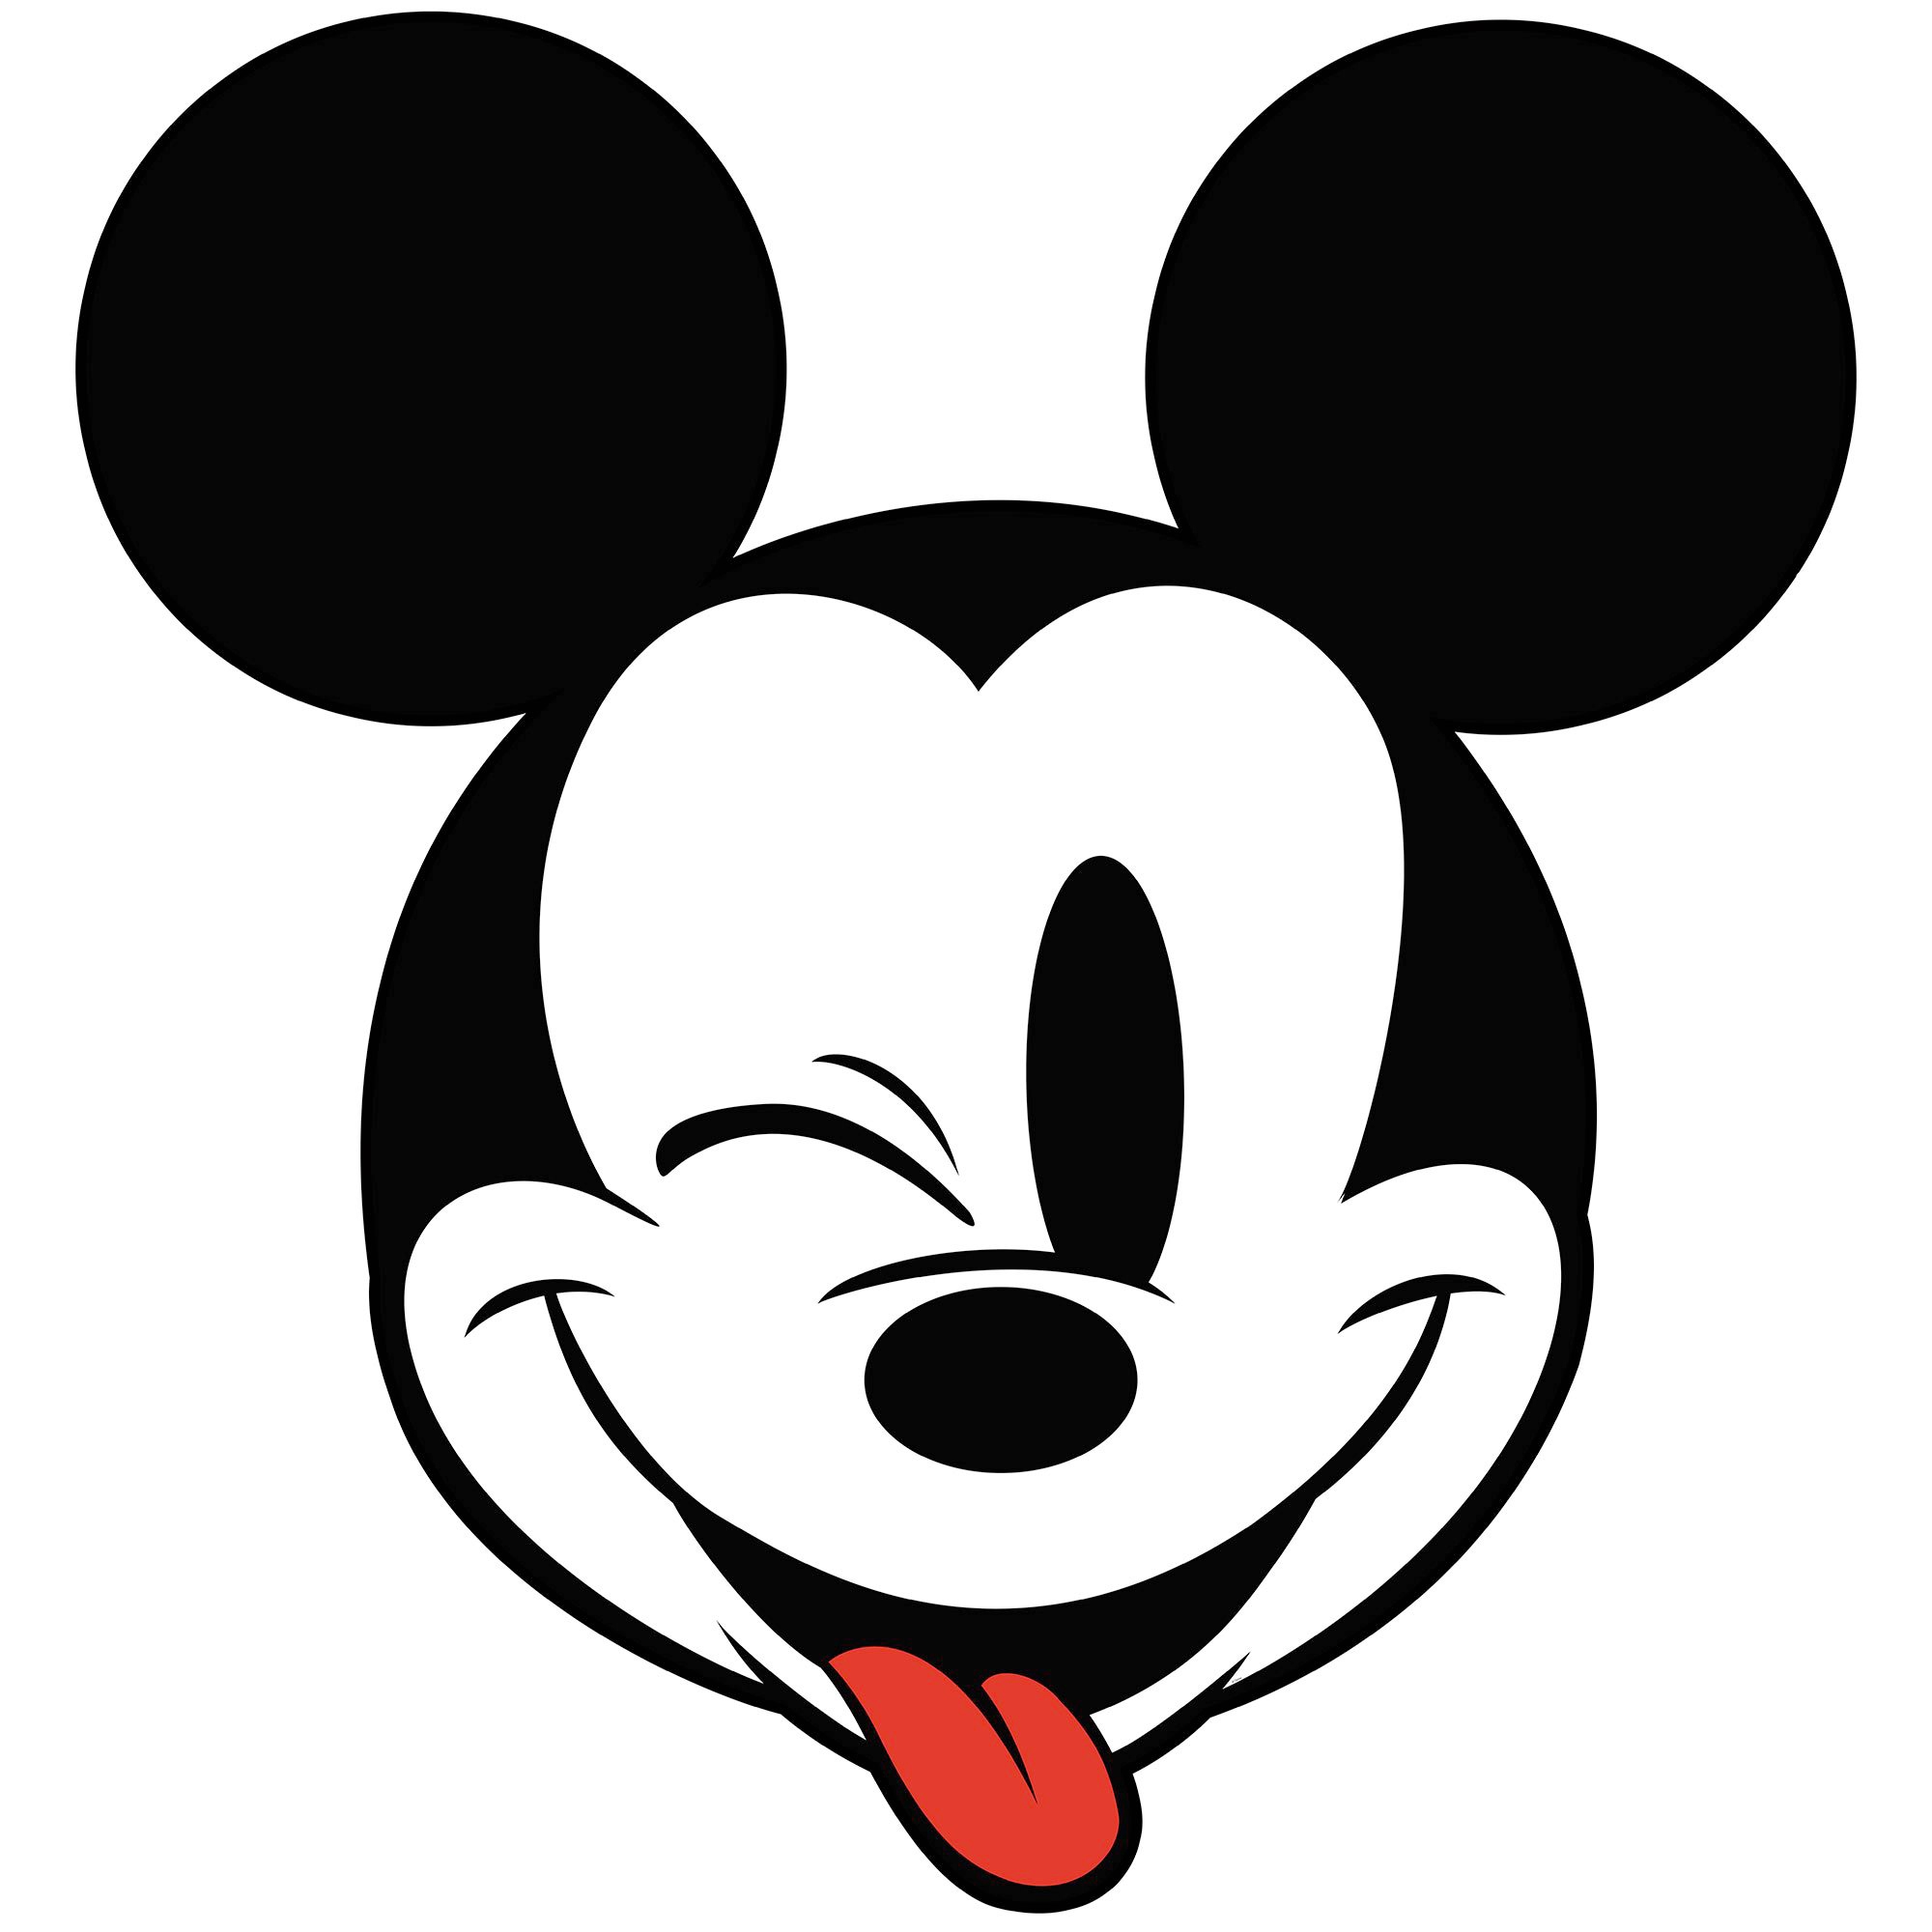 Komar Fototapete »Mickey Head Optimism«, 125x125 cm (Breite x Höhe), rund und selbstklebend